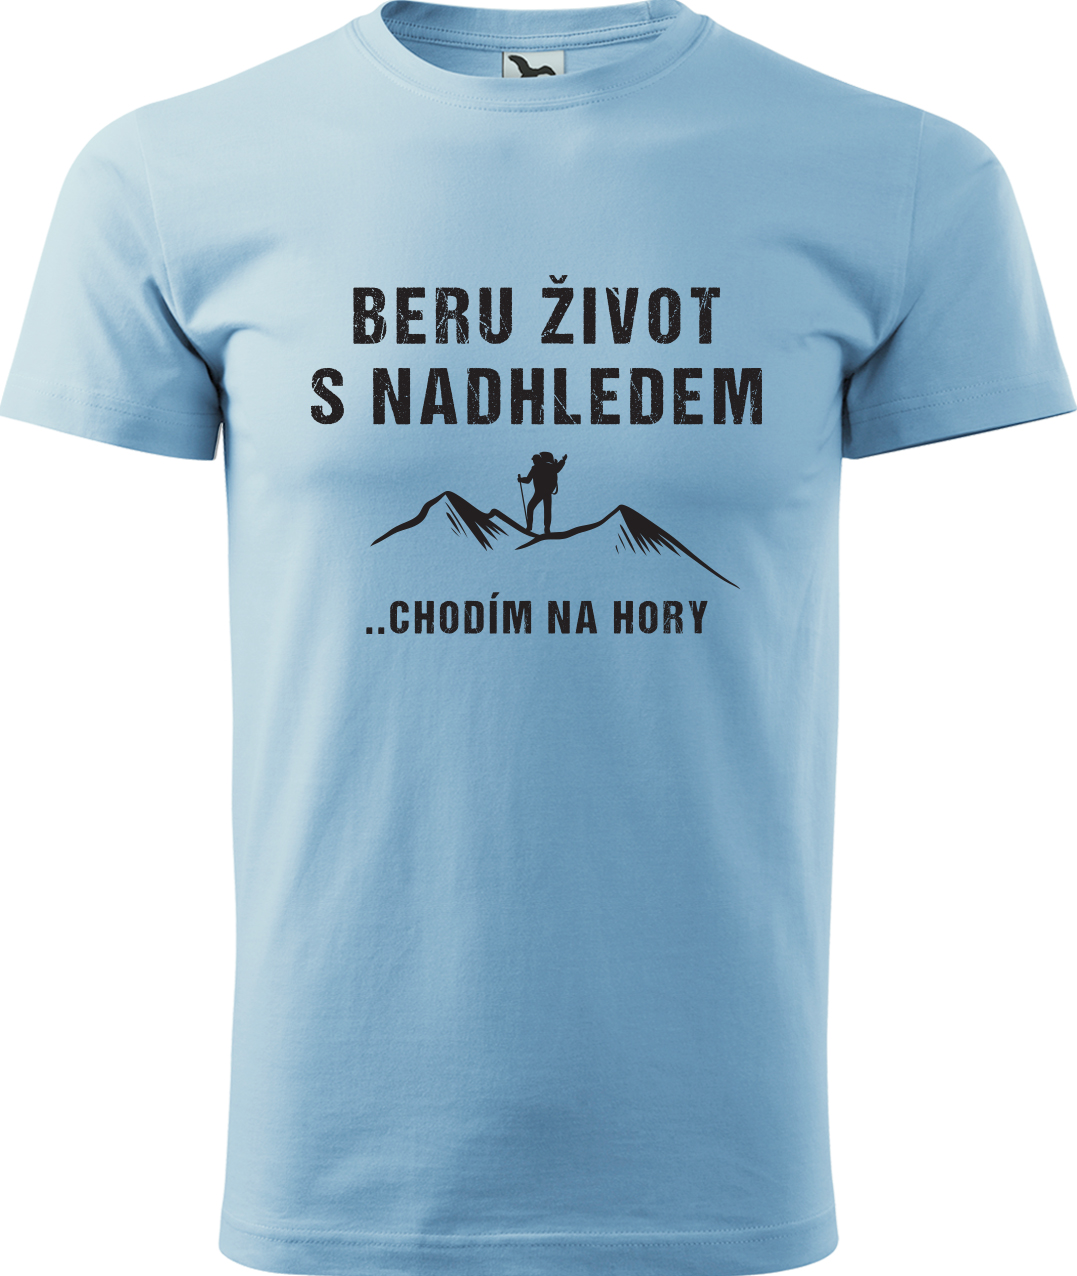 Pánské tričko na hory - Beru život s nadhledem, chodím na hory Velikost: XL, Barva: Nebesky modrá (15), Střih: pánský